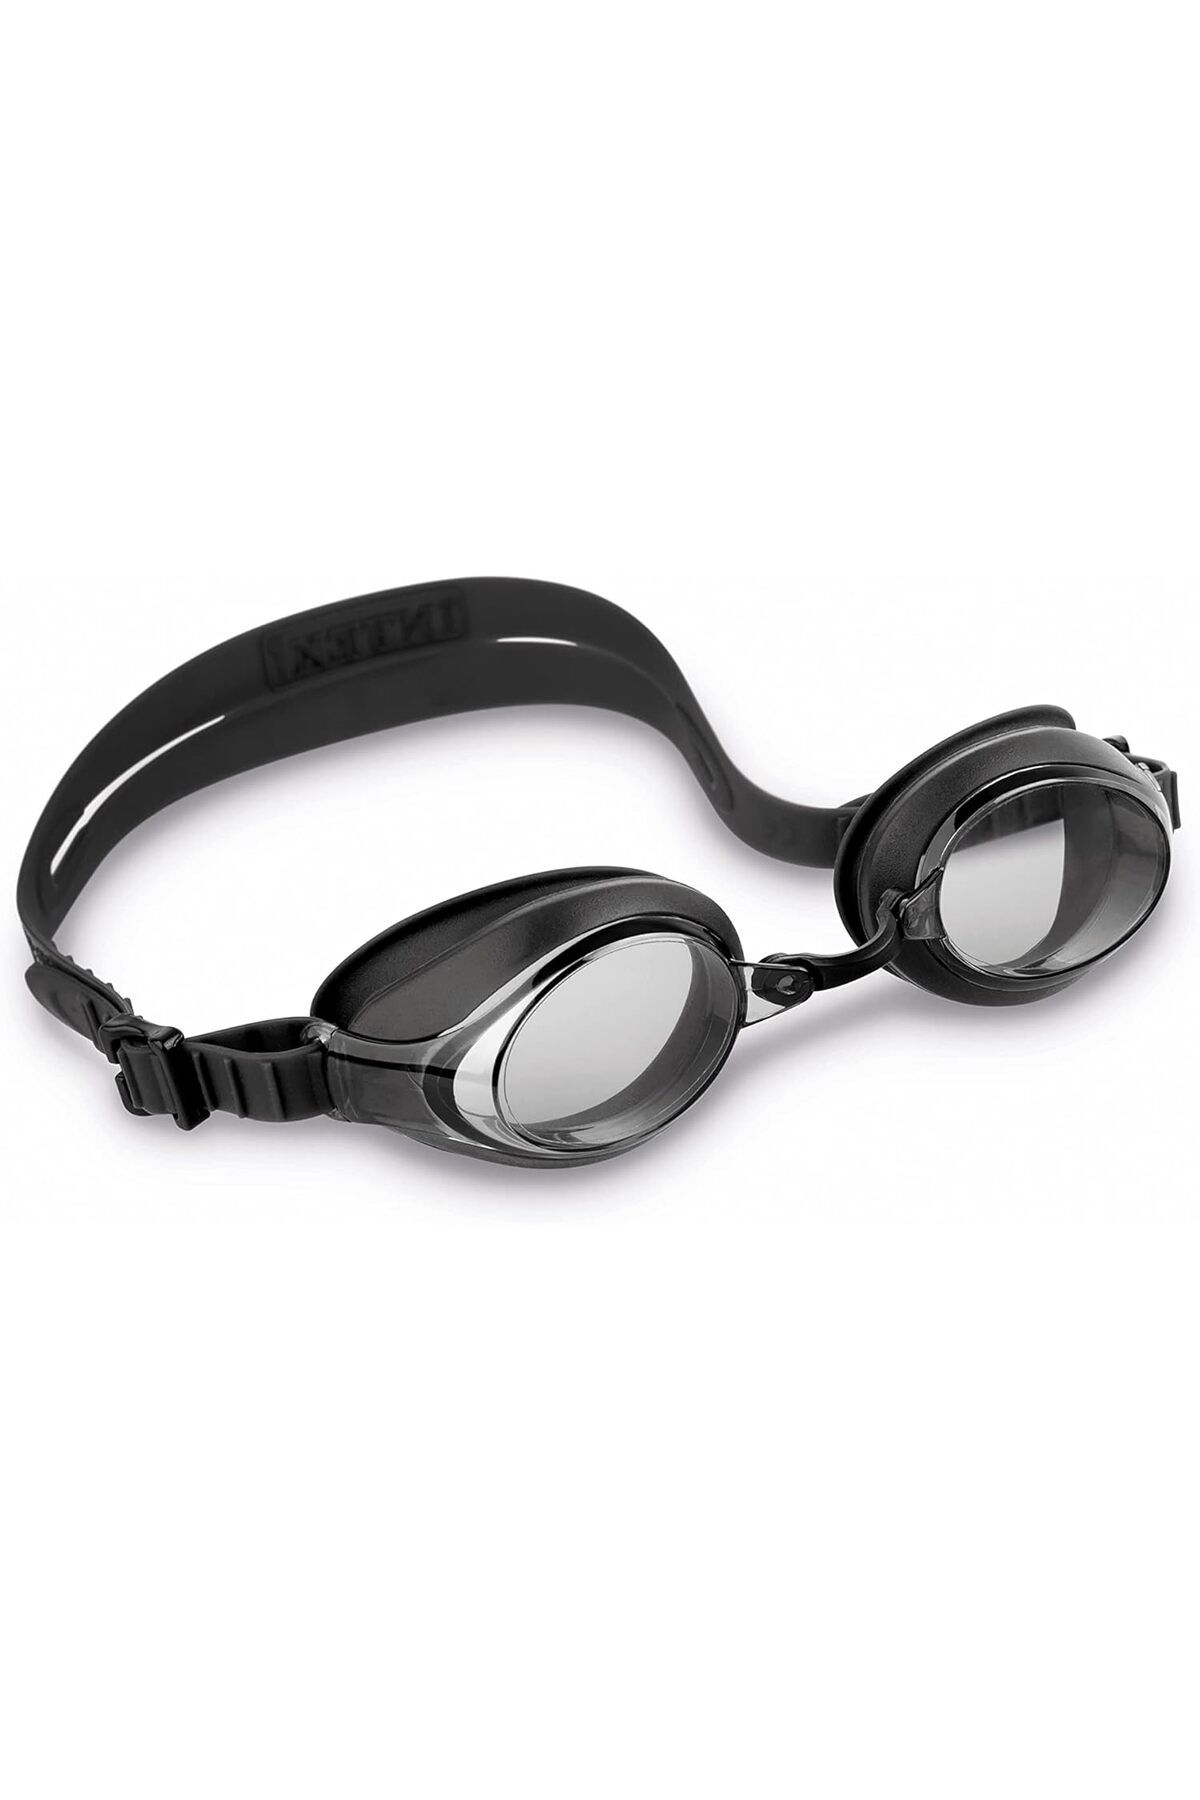 Intex Vakumlu Sporcu Yüzücü Gözlüğü